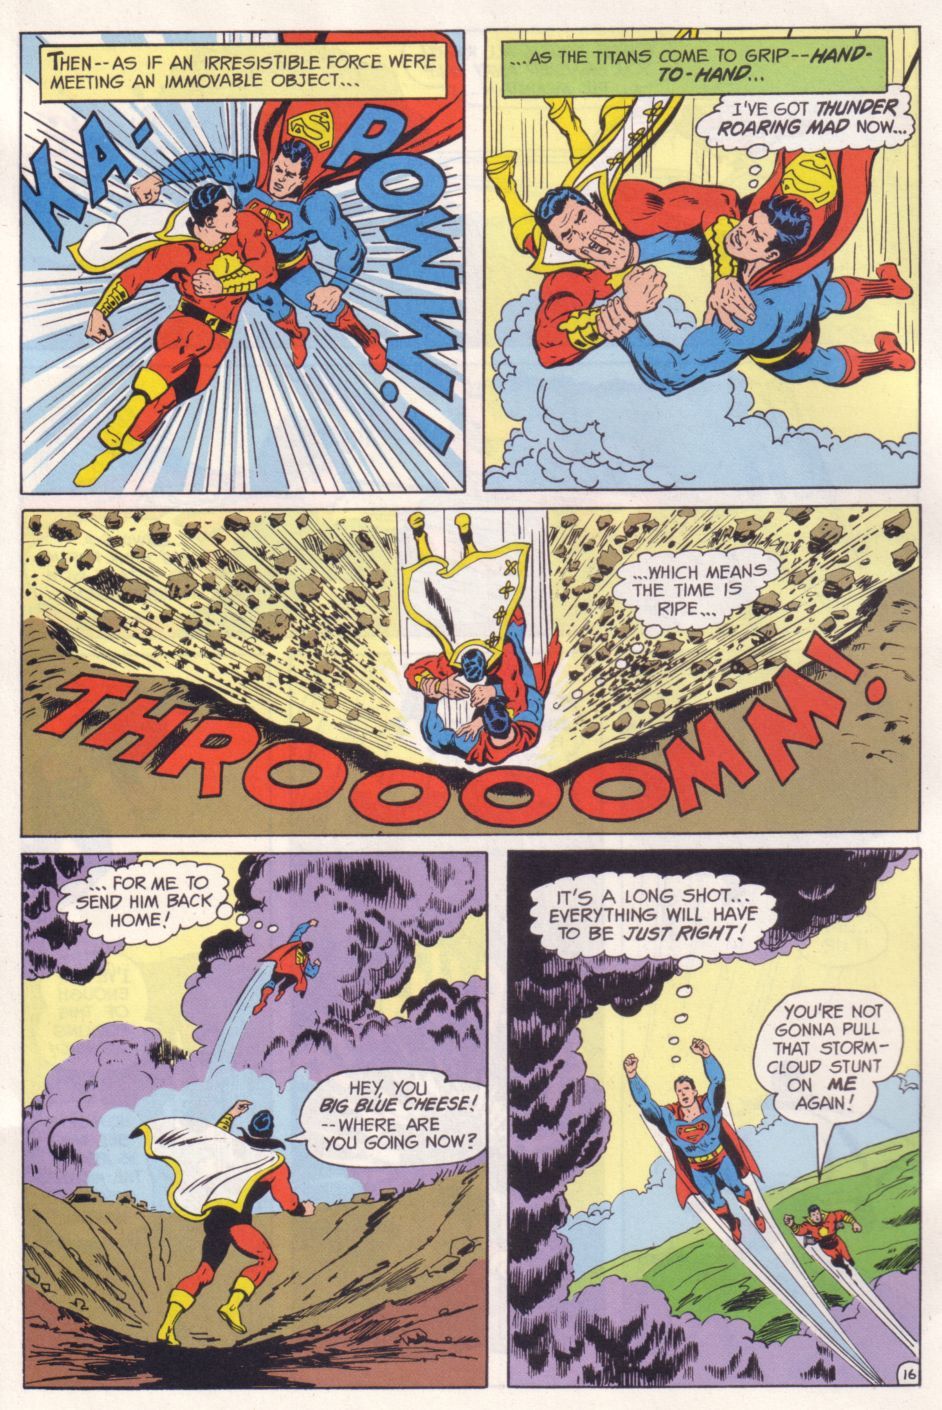 Superman walczy z Kapitanem Gromem